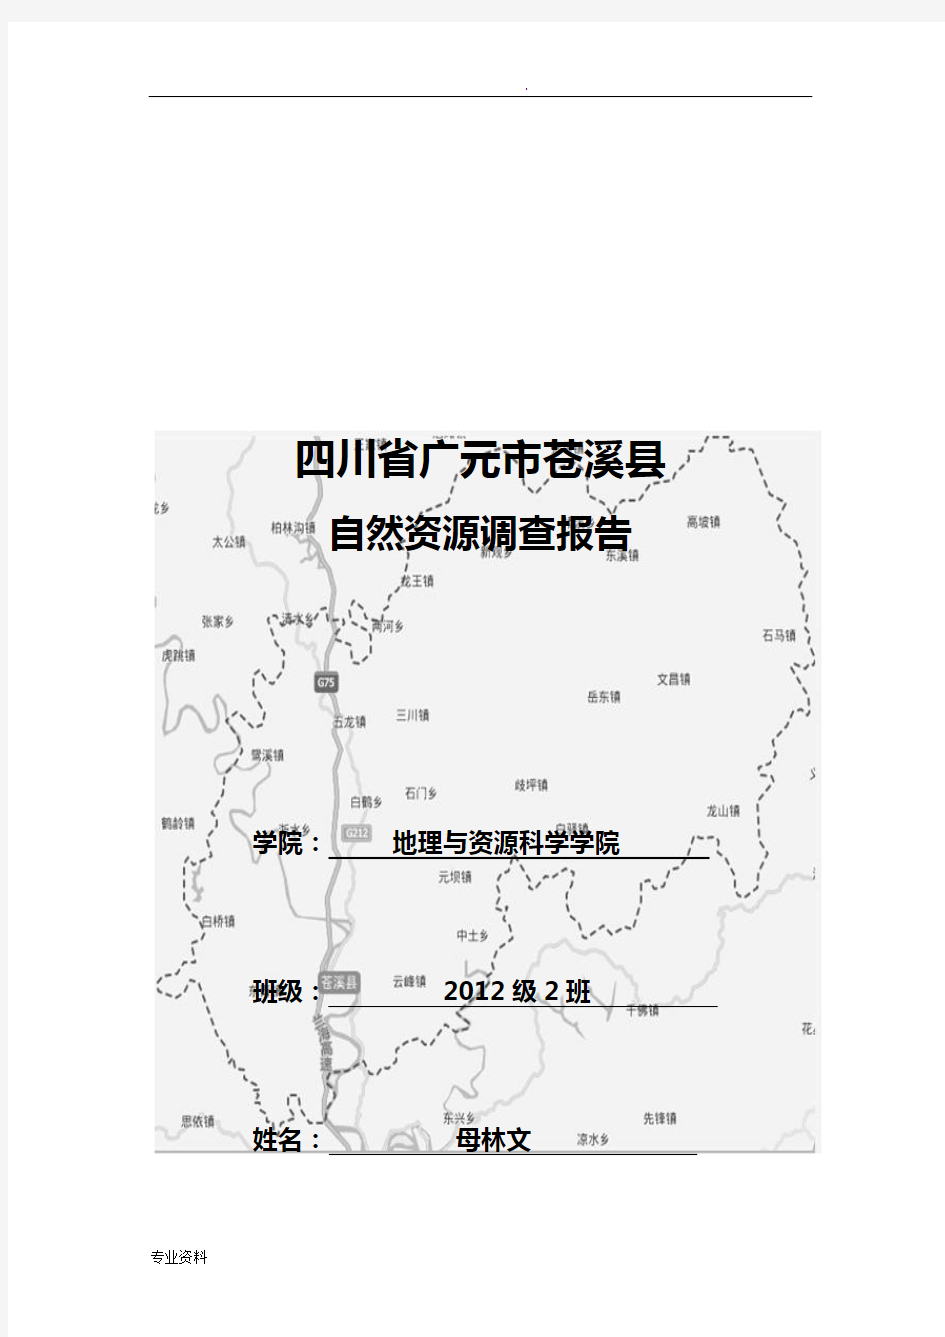 苍溪县主要自然资源调查报告,区域分析与区域规划